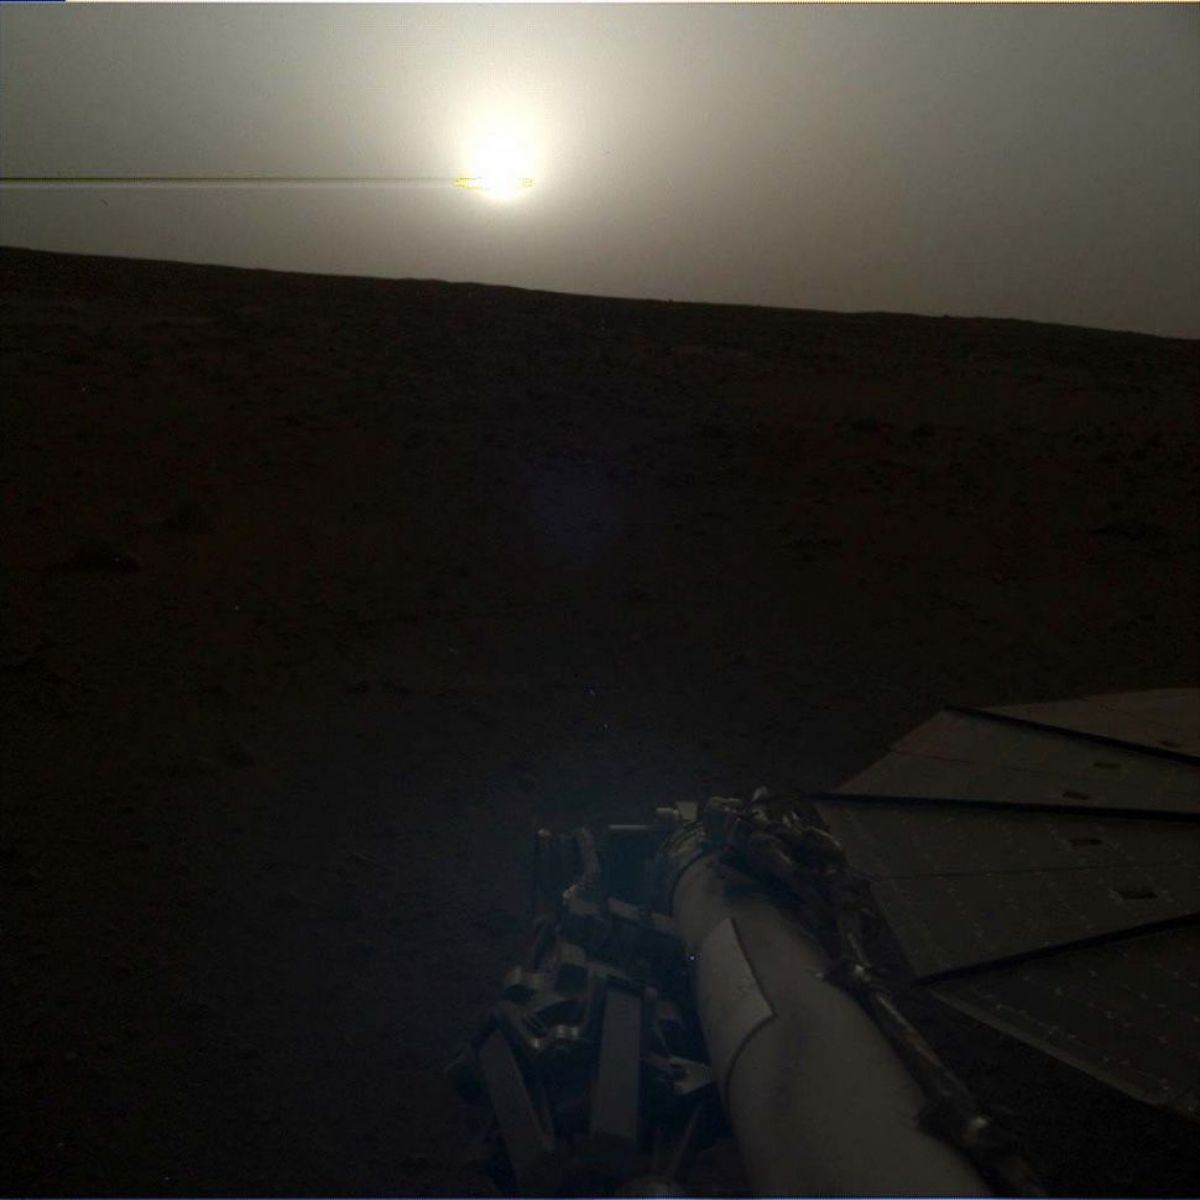 InSight Lander, находящийся на Марсе уже ровно сто дней, прислал интересный снимок заката